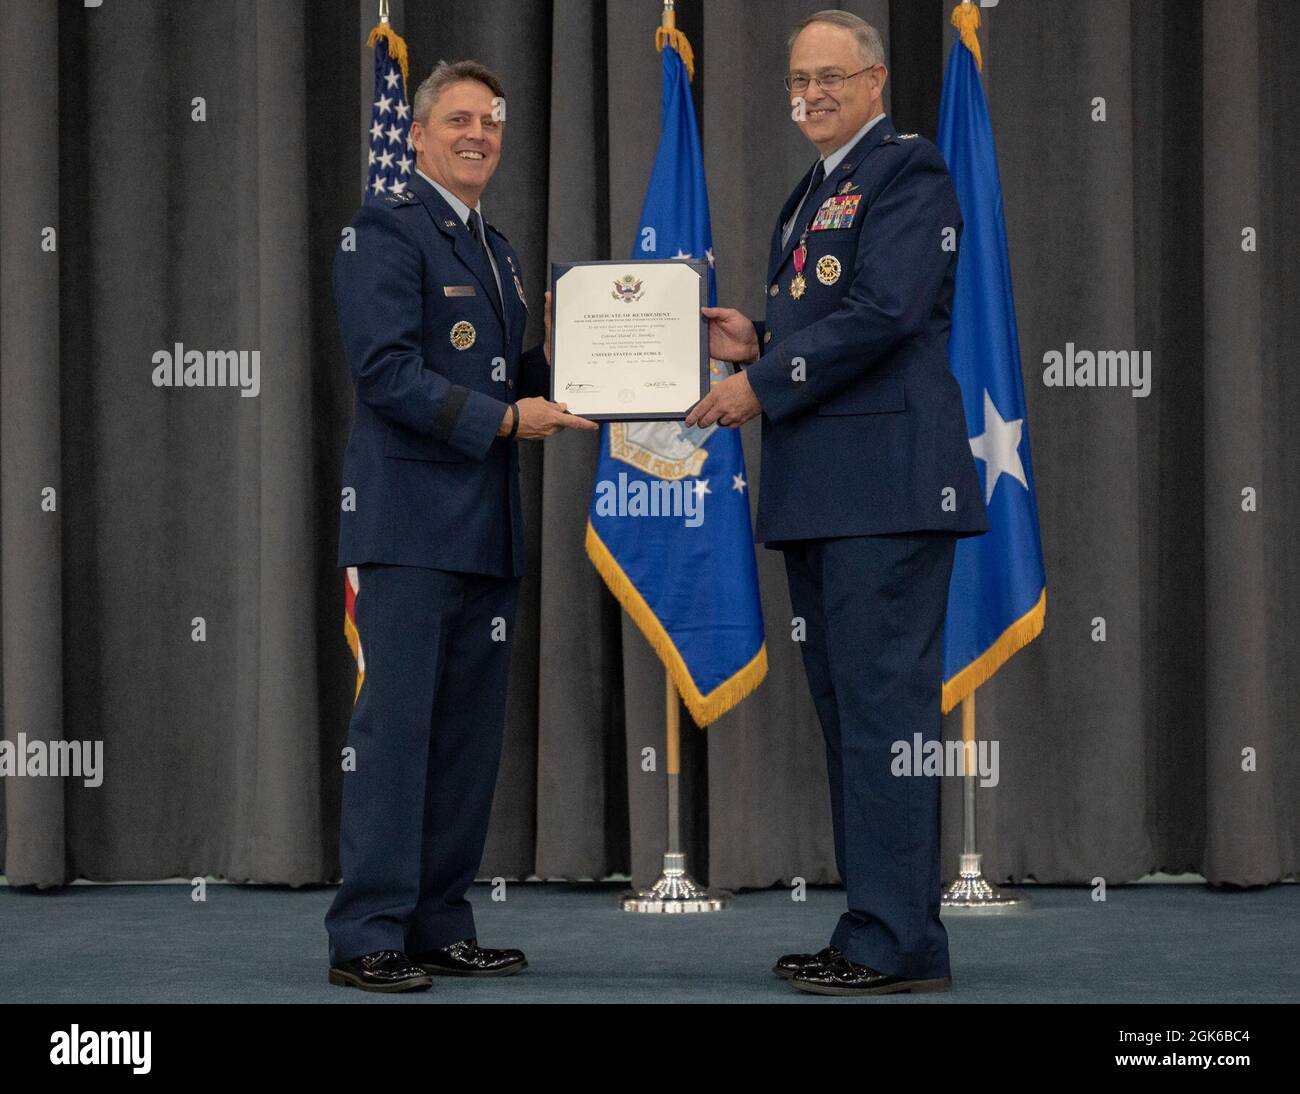 El Coronel Stookey, subdirector del Comando de Huelga Global de la Fuerza Aérea de la División de Operaciones y Comunicaciones y director de información, recibe un Certificado de Jubilación del General de División Jason Armagost, director de planes estratégicos, programas y requisitos de la AFGSC, en la Base de la Fuerza Aérea de Barksdale, Louisiana, 13 de agosto de 2021. Stookey sirvió honrosamente por más de 36 años. Foto de stock